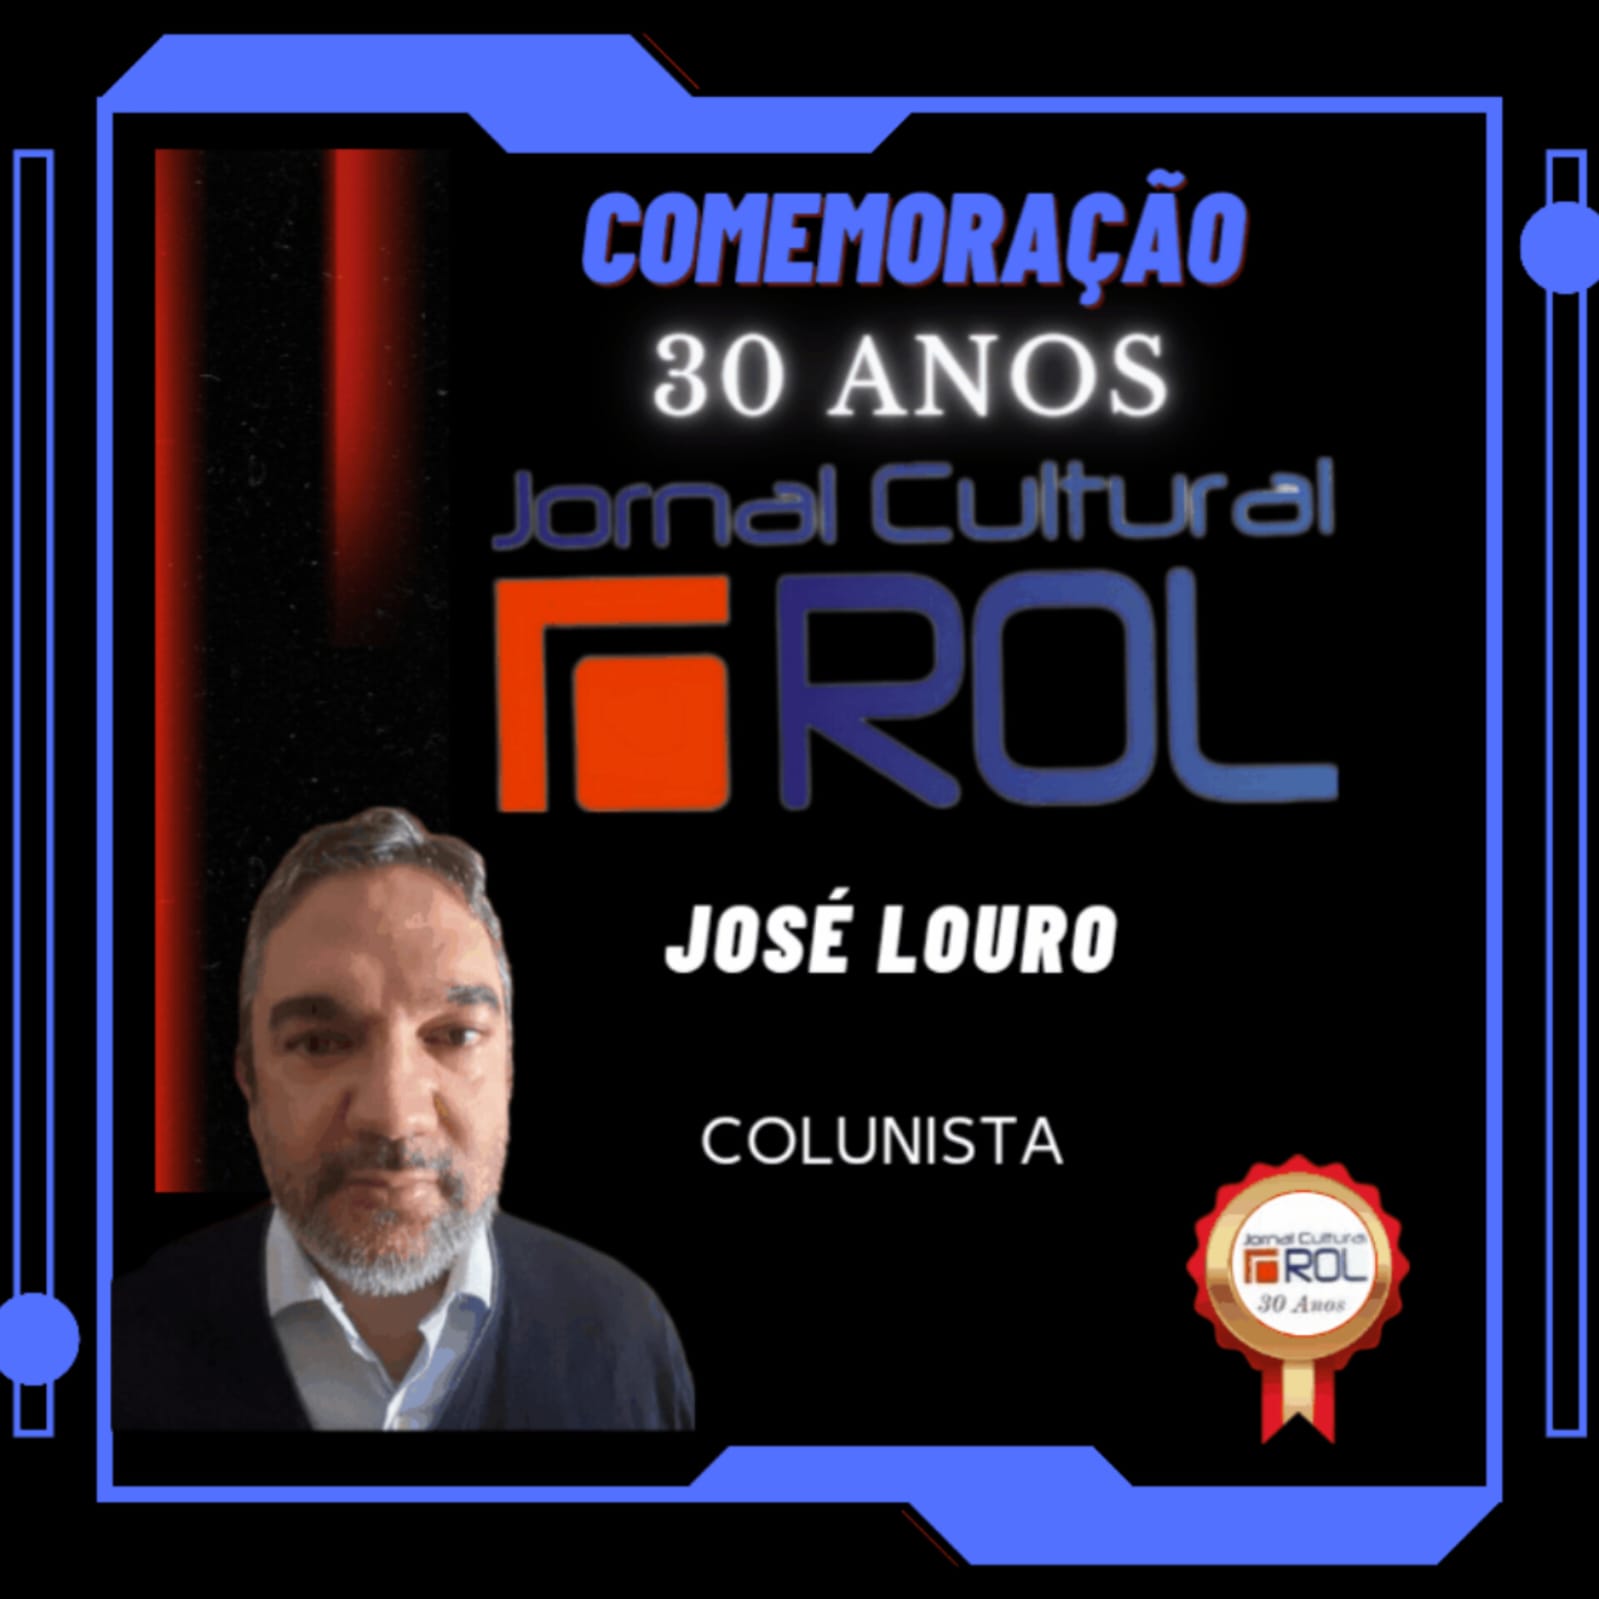 Card comemorativo dos 30 anos do Jornal Cultural ROL José Louro